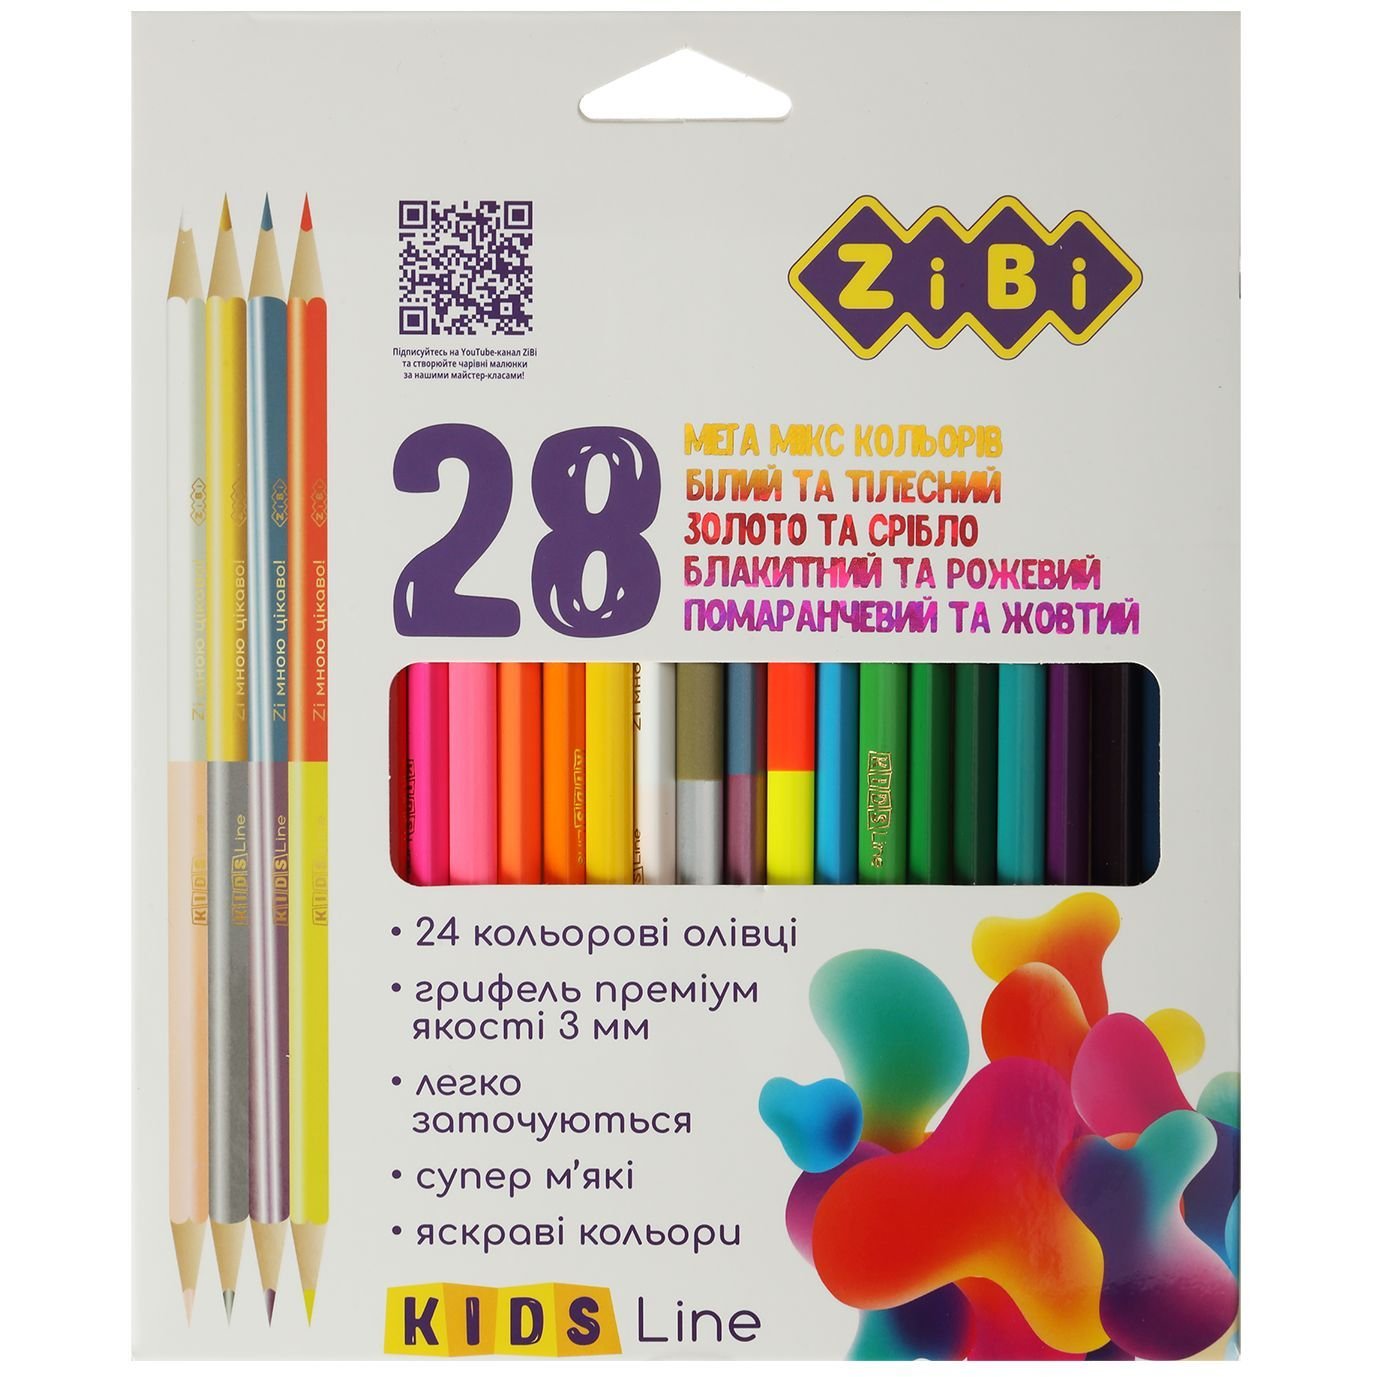 Photos - Pencil ZiBi Олівці кольорові  Kids Line 24 шт. 28 кольорів  (ZB.2442)